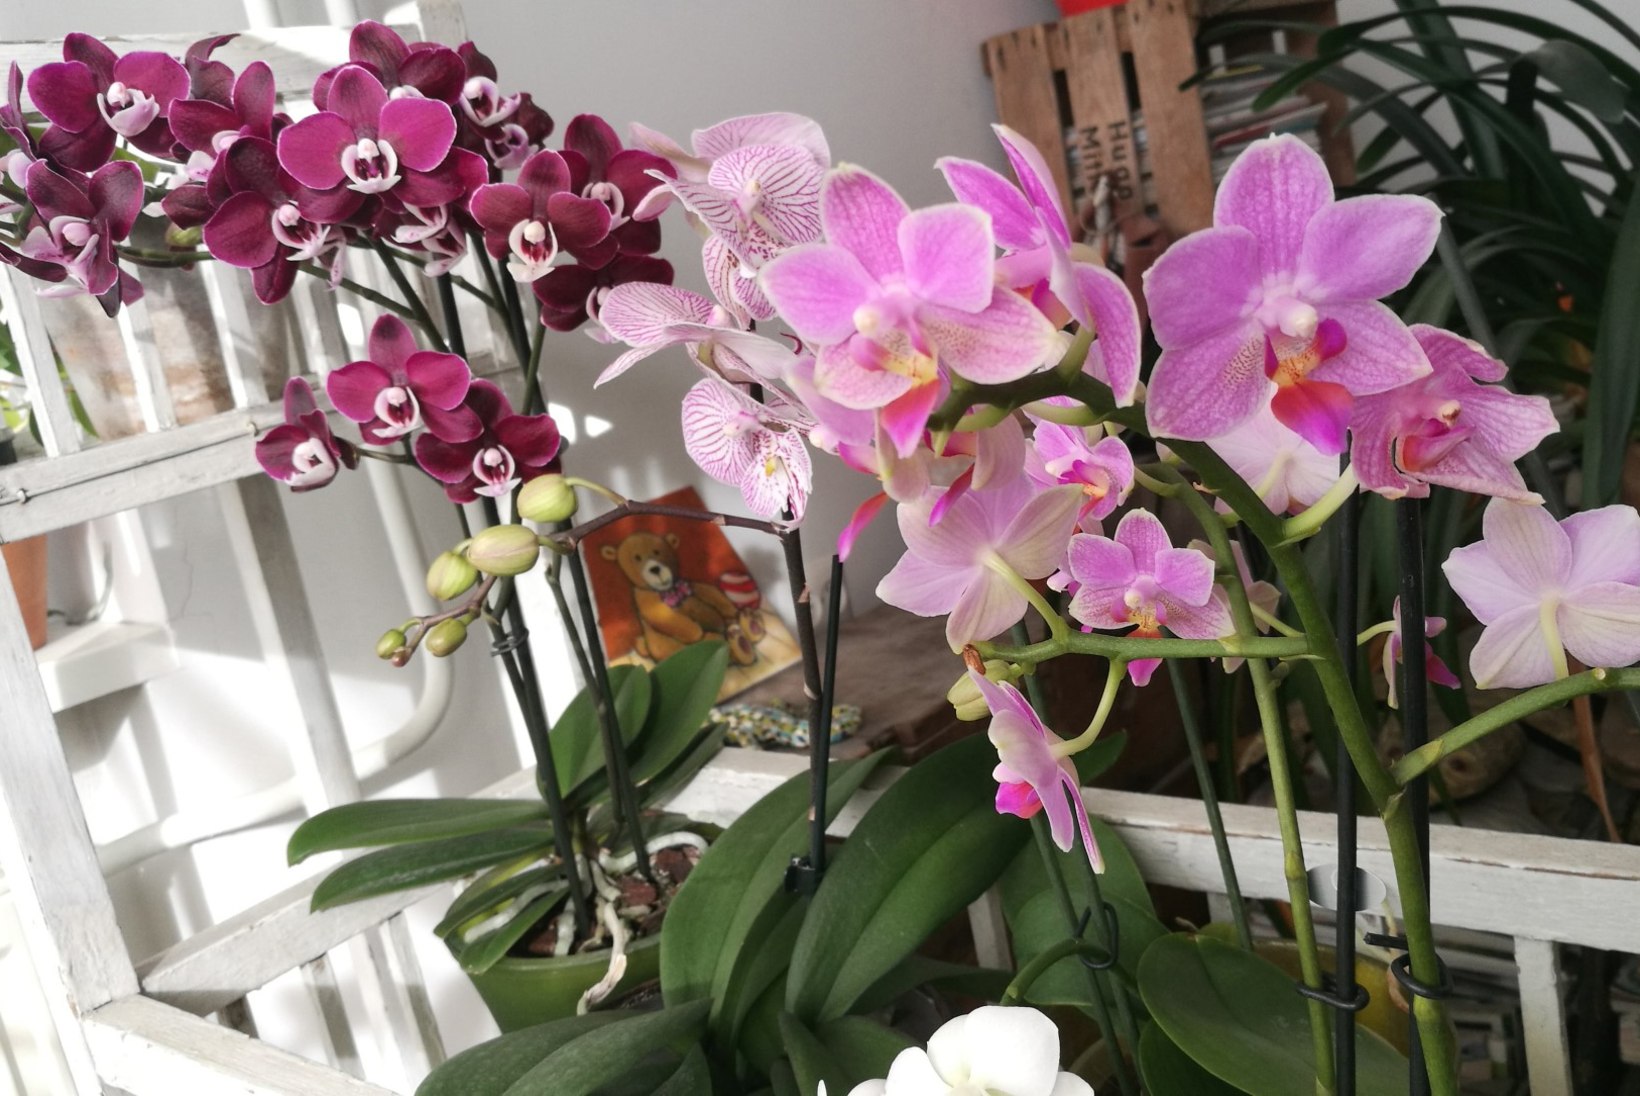 FOTOD | Taavi Teplenkov armus umbes 15 aastat tagasi orhideedesse: vaata, millised iludused näitleja kodu kaunistavad!